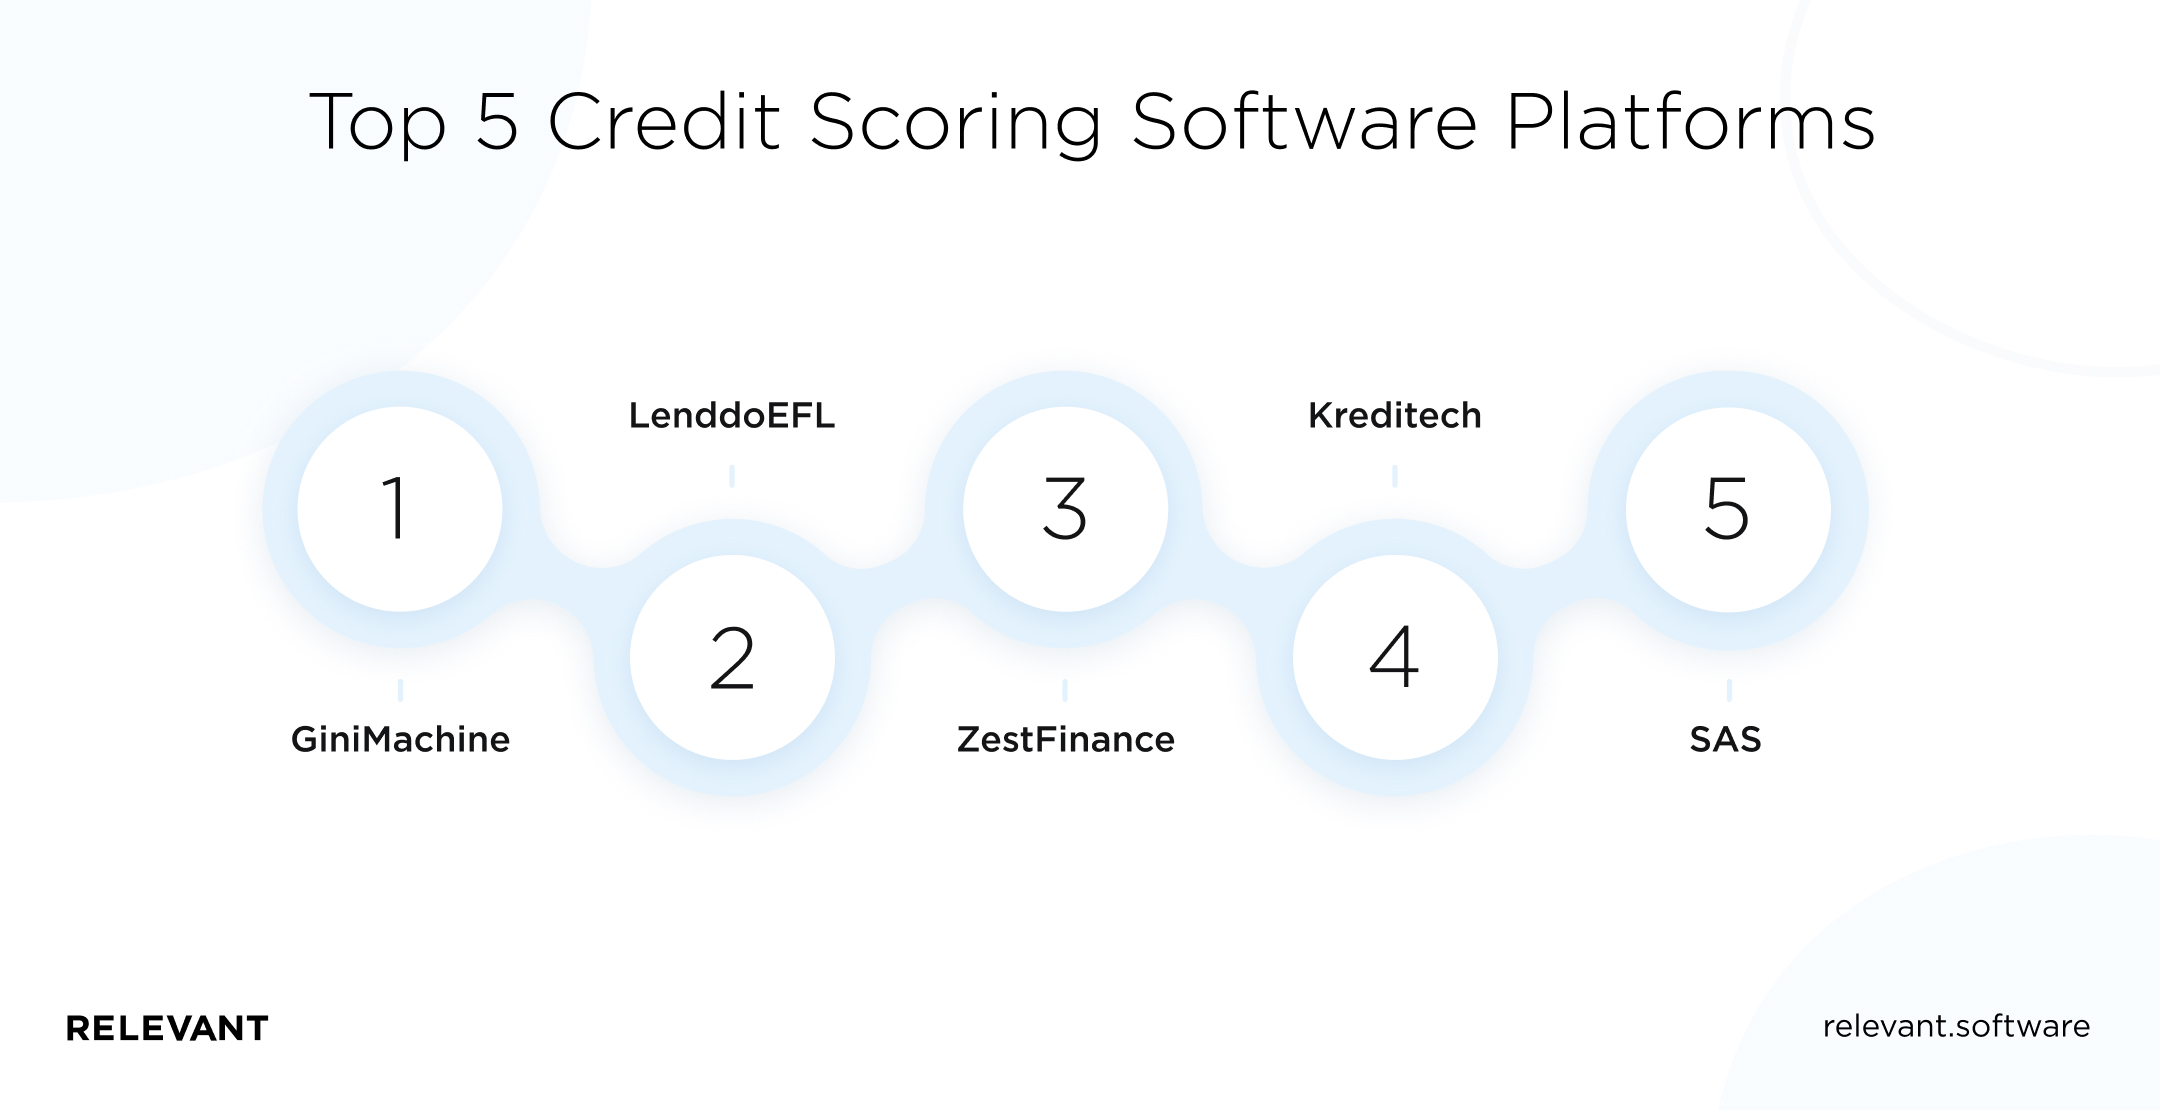 Top 5 Credit Scoring Software Platforms